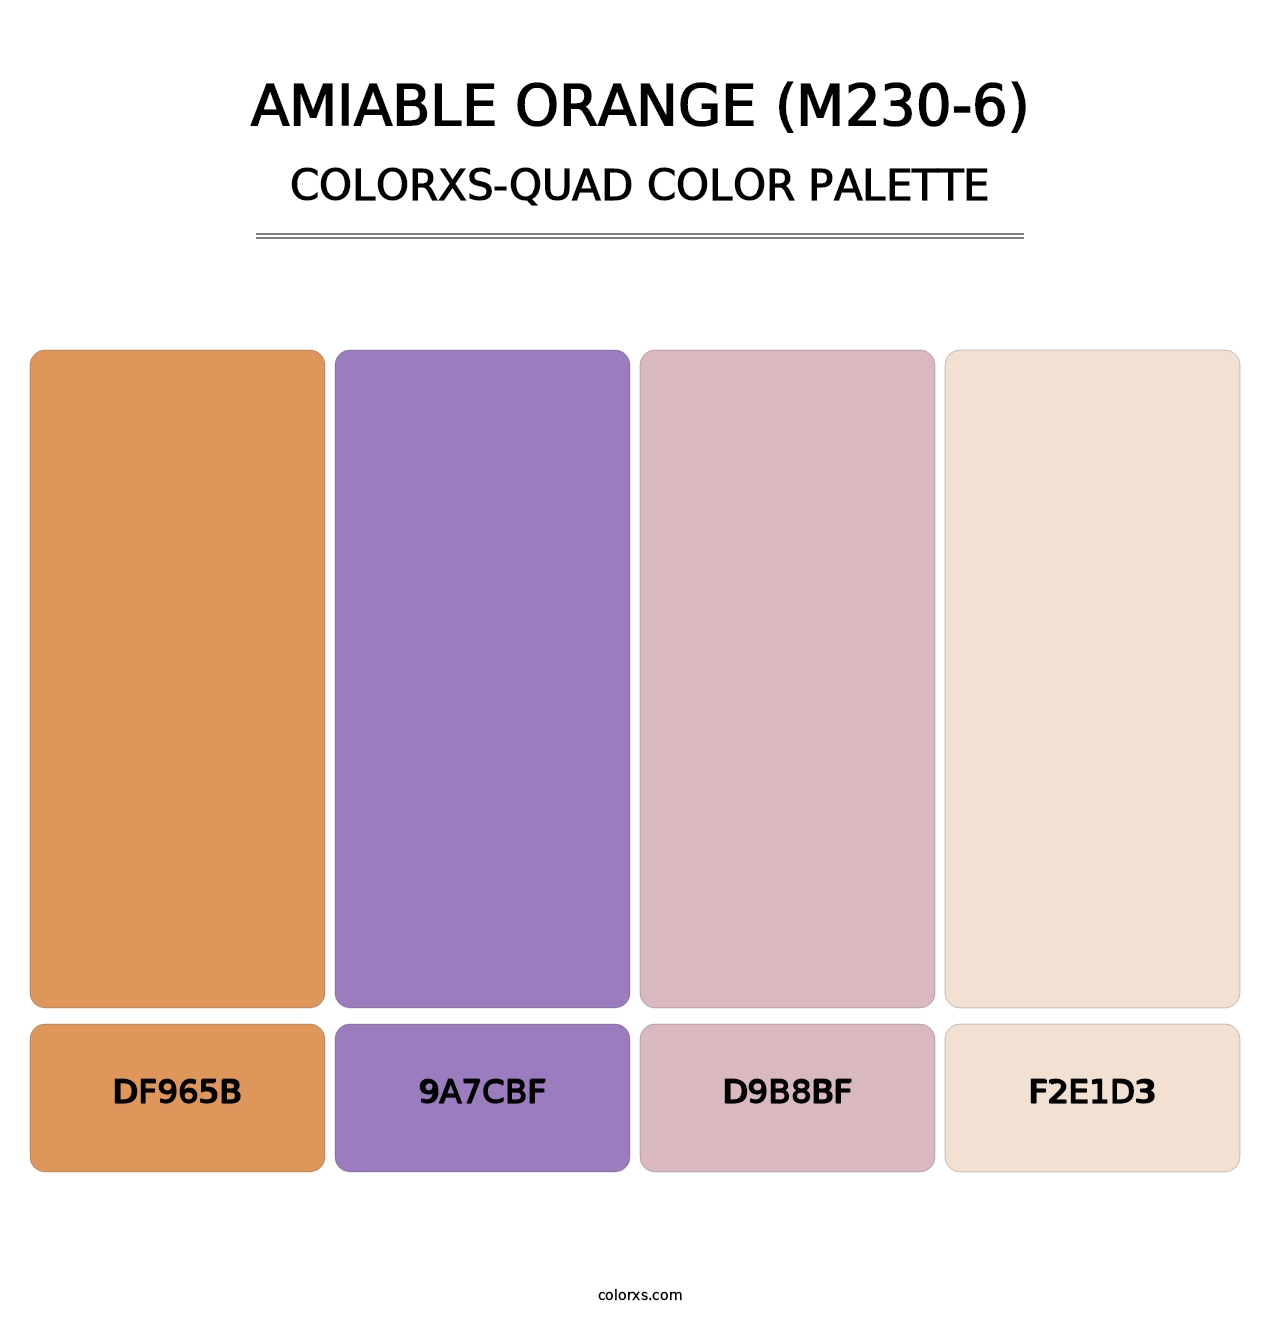 Amiable Orange (M230-6) - Colorxs Quad Palette